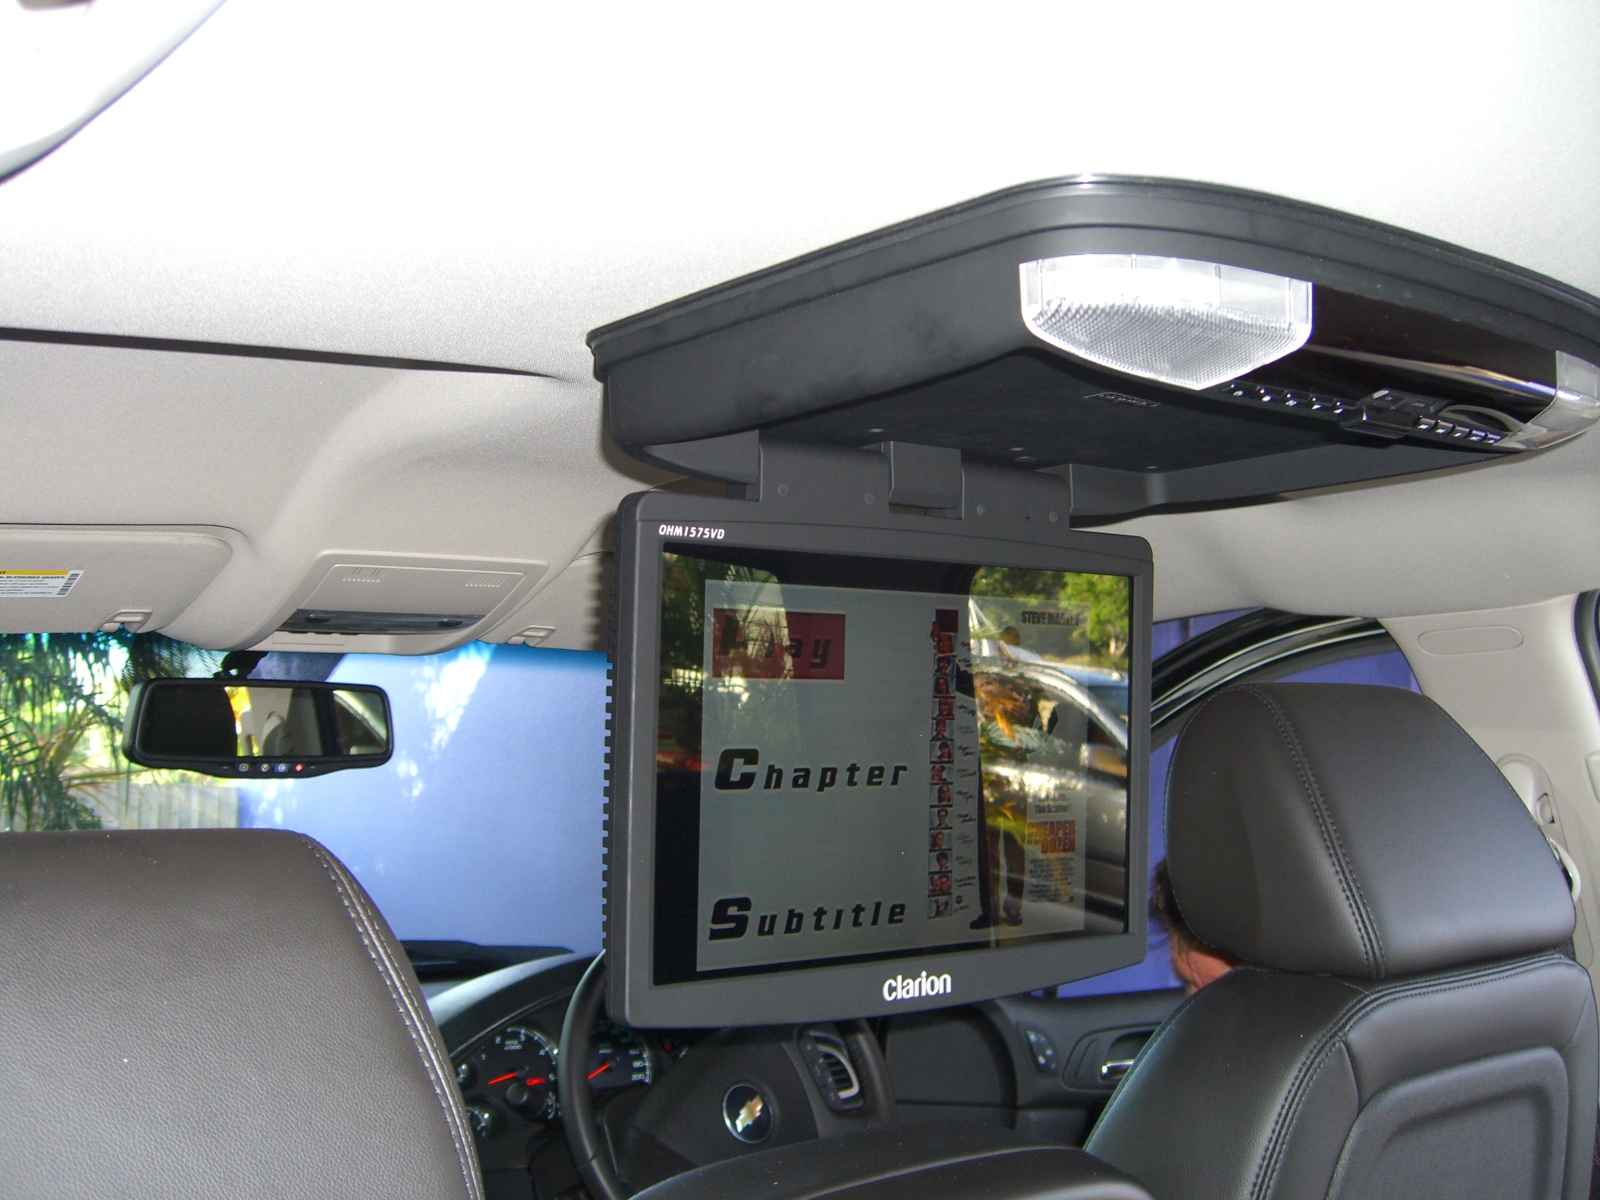 Chevrolet Silverado 2009 Pioneer Avic f10bt Clarion 15 inch roof screen